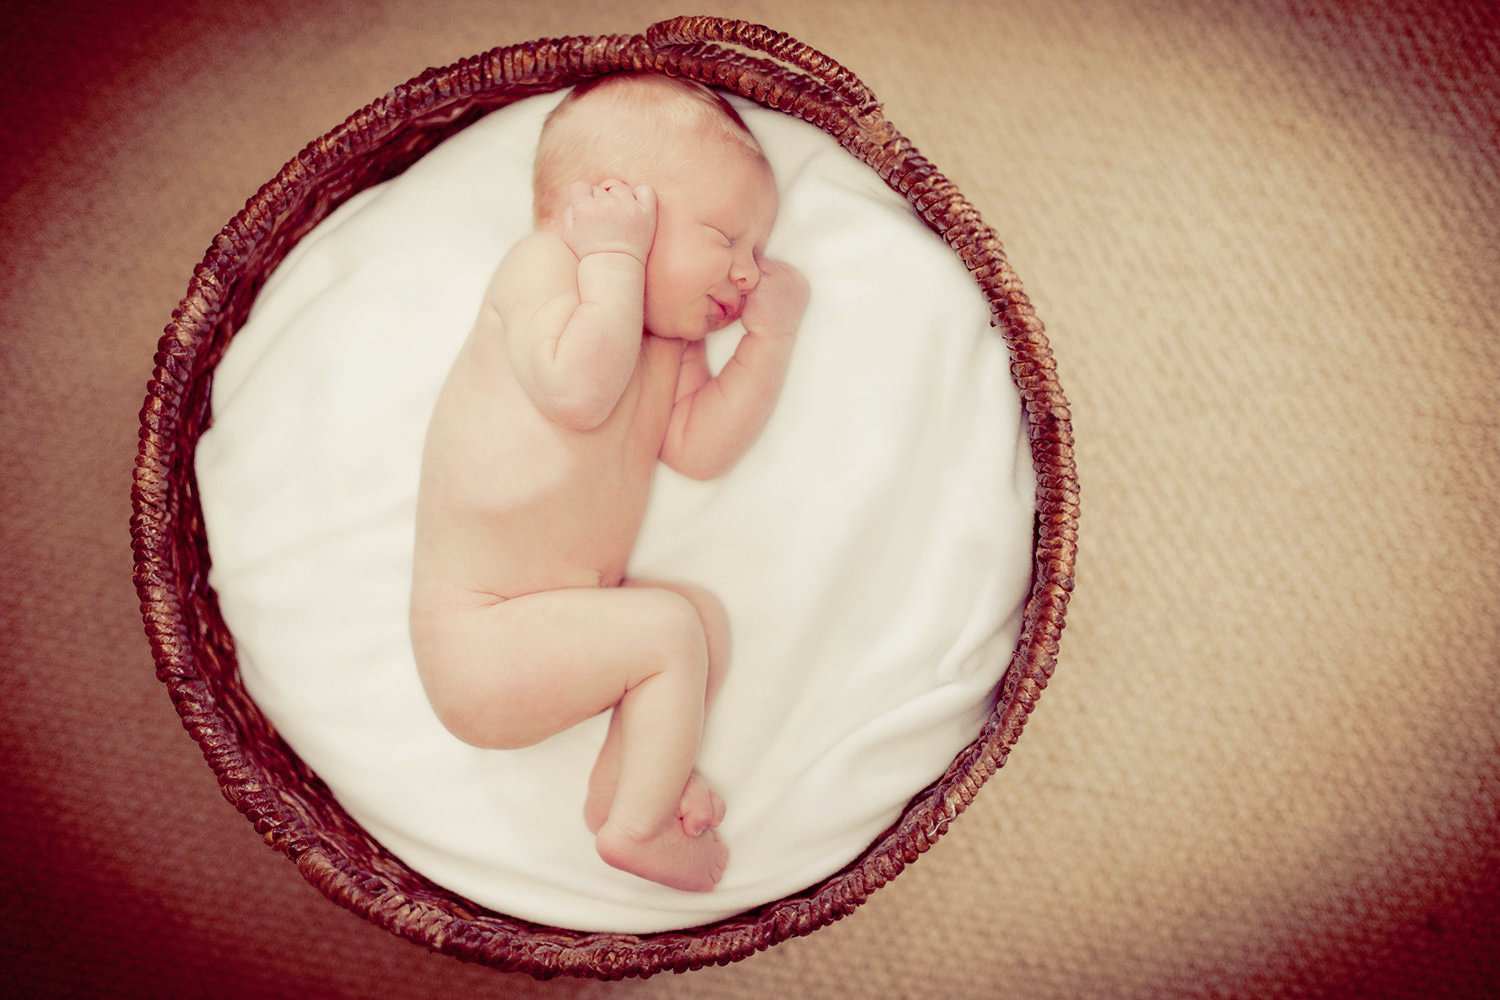 san diego newborn photography | newborn sleeping  in round basket with hands up